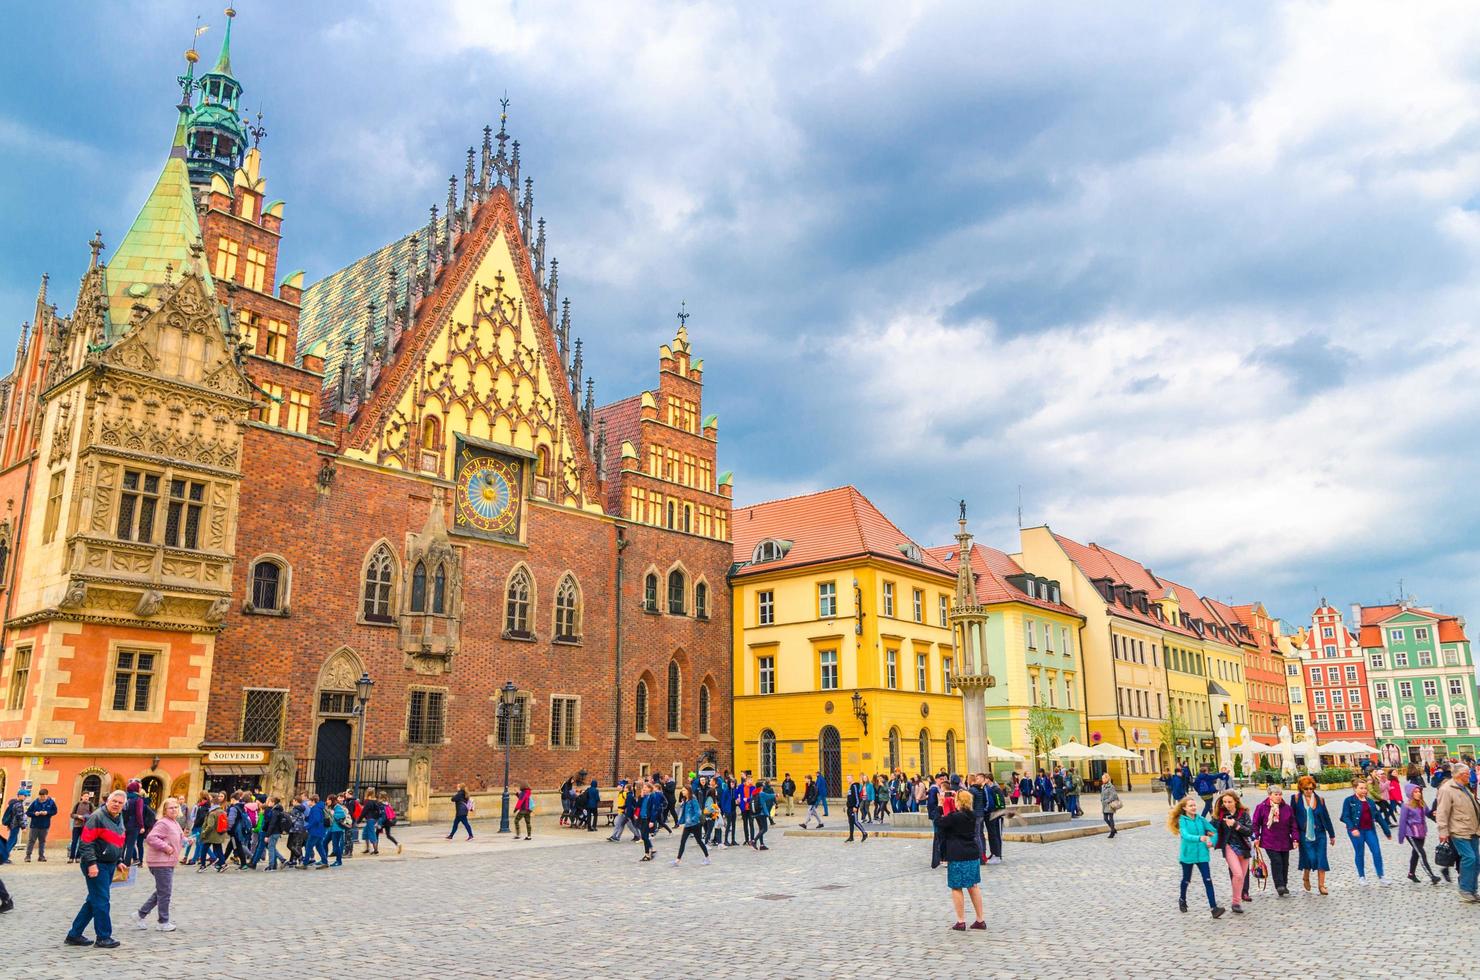 Wroclaw, Polonia, 7 de mayo de 2019 edificio del antiguo ayuntamiento con aguja de la torre del reloj, edificios coloridos y multitud de turistas en la plaza del mercado rynek de adoquines en el centro histórico de la ciudad vieja foto